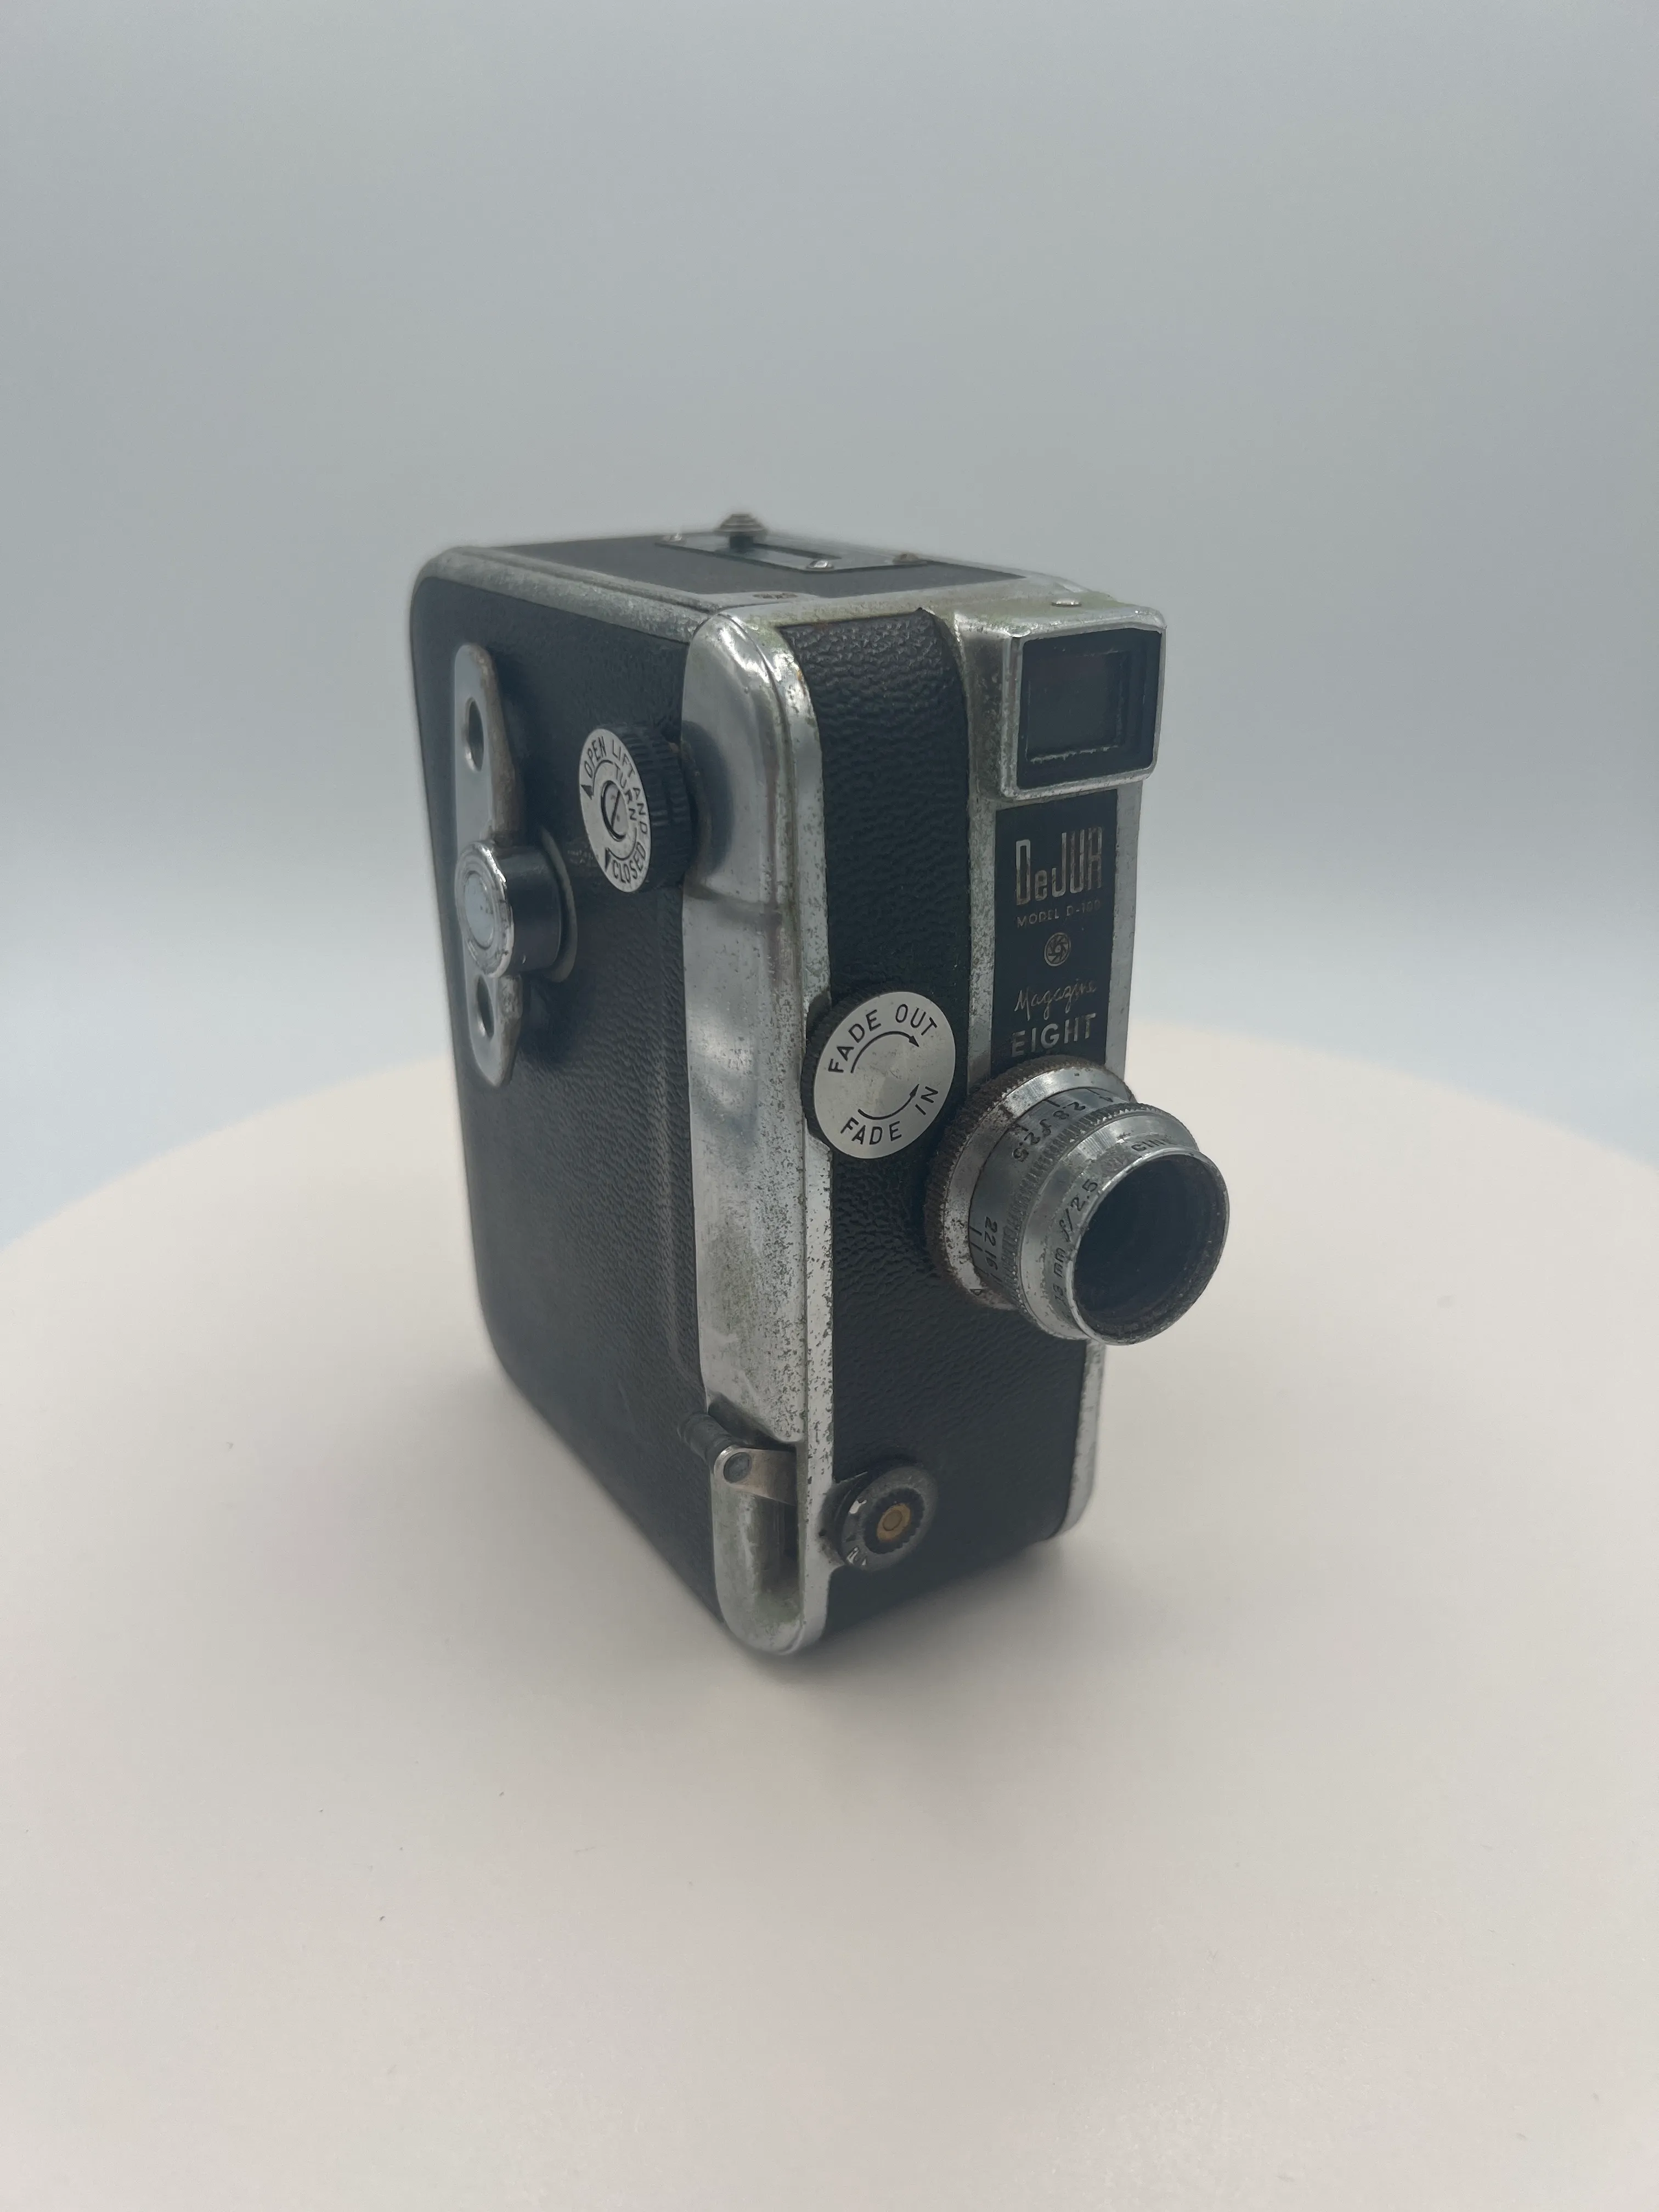 Dejur Model D-100 - Movie Camera media